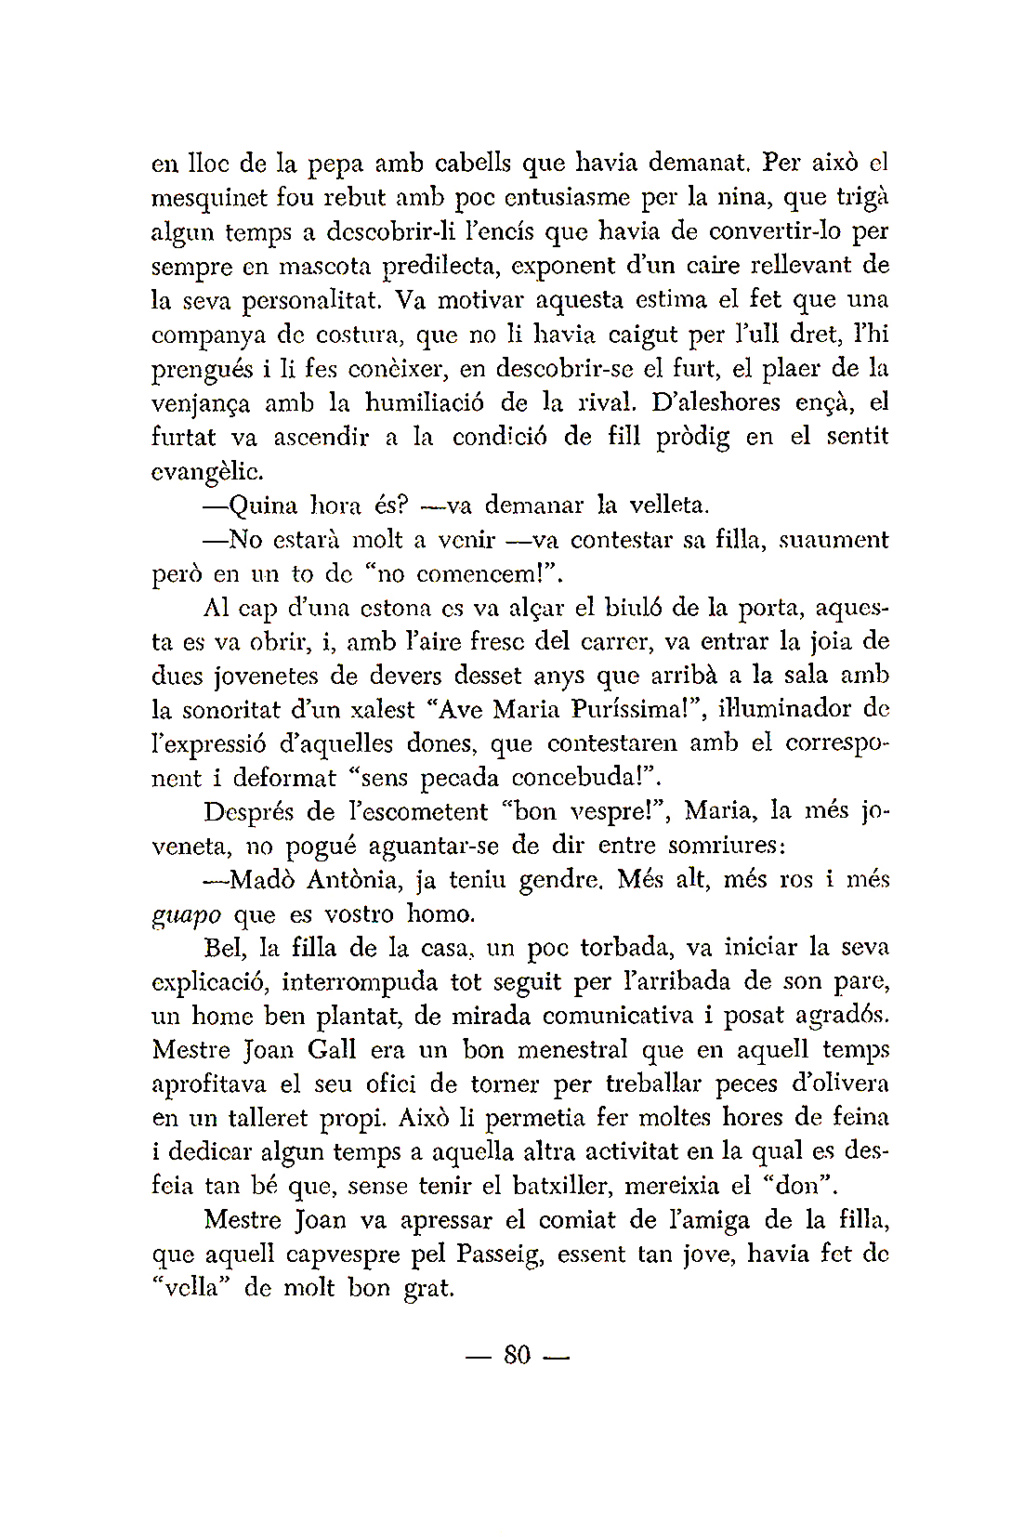 MAS COSAS DE JOAN BONET - Página 3 Poemes13